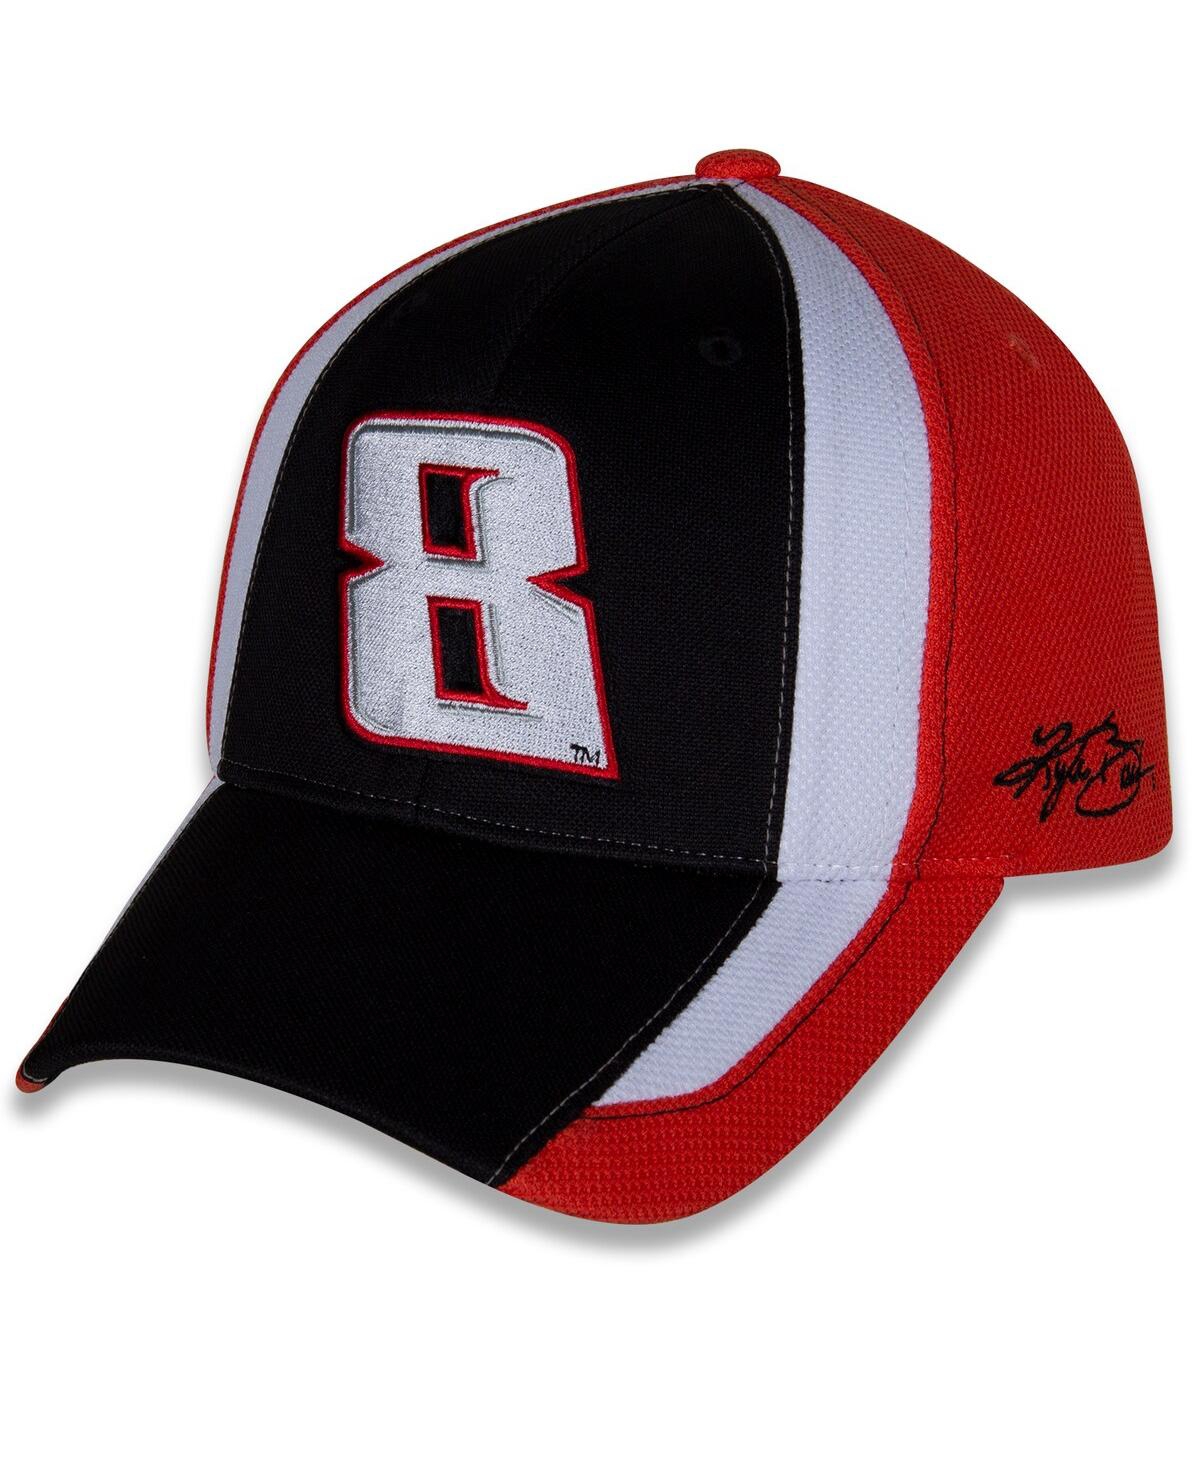 Men's Richard Childress Racing Team Collection Black, White Kyle Busch Restart Adjustable Hat - Black, White